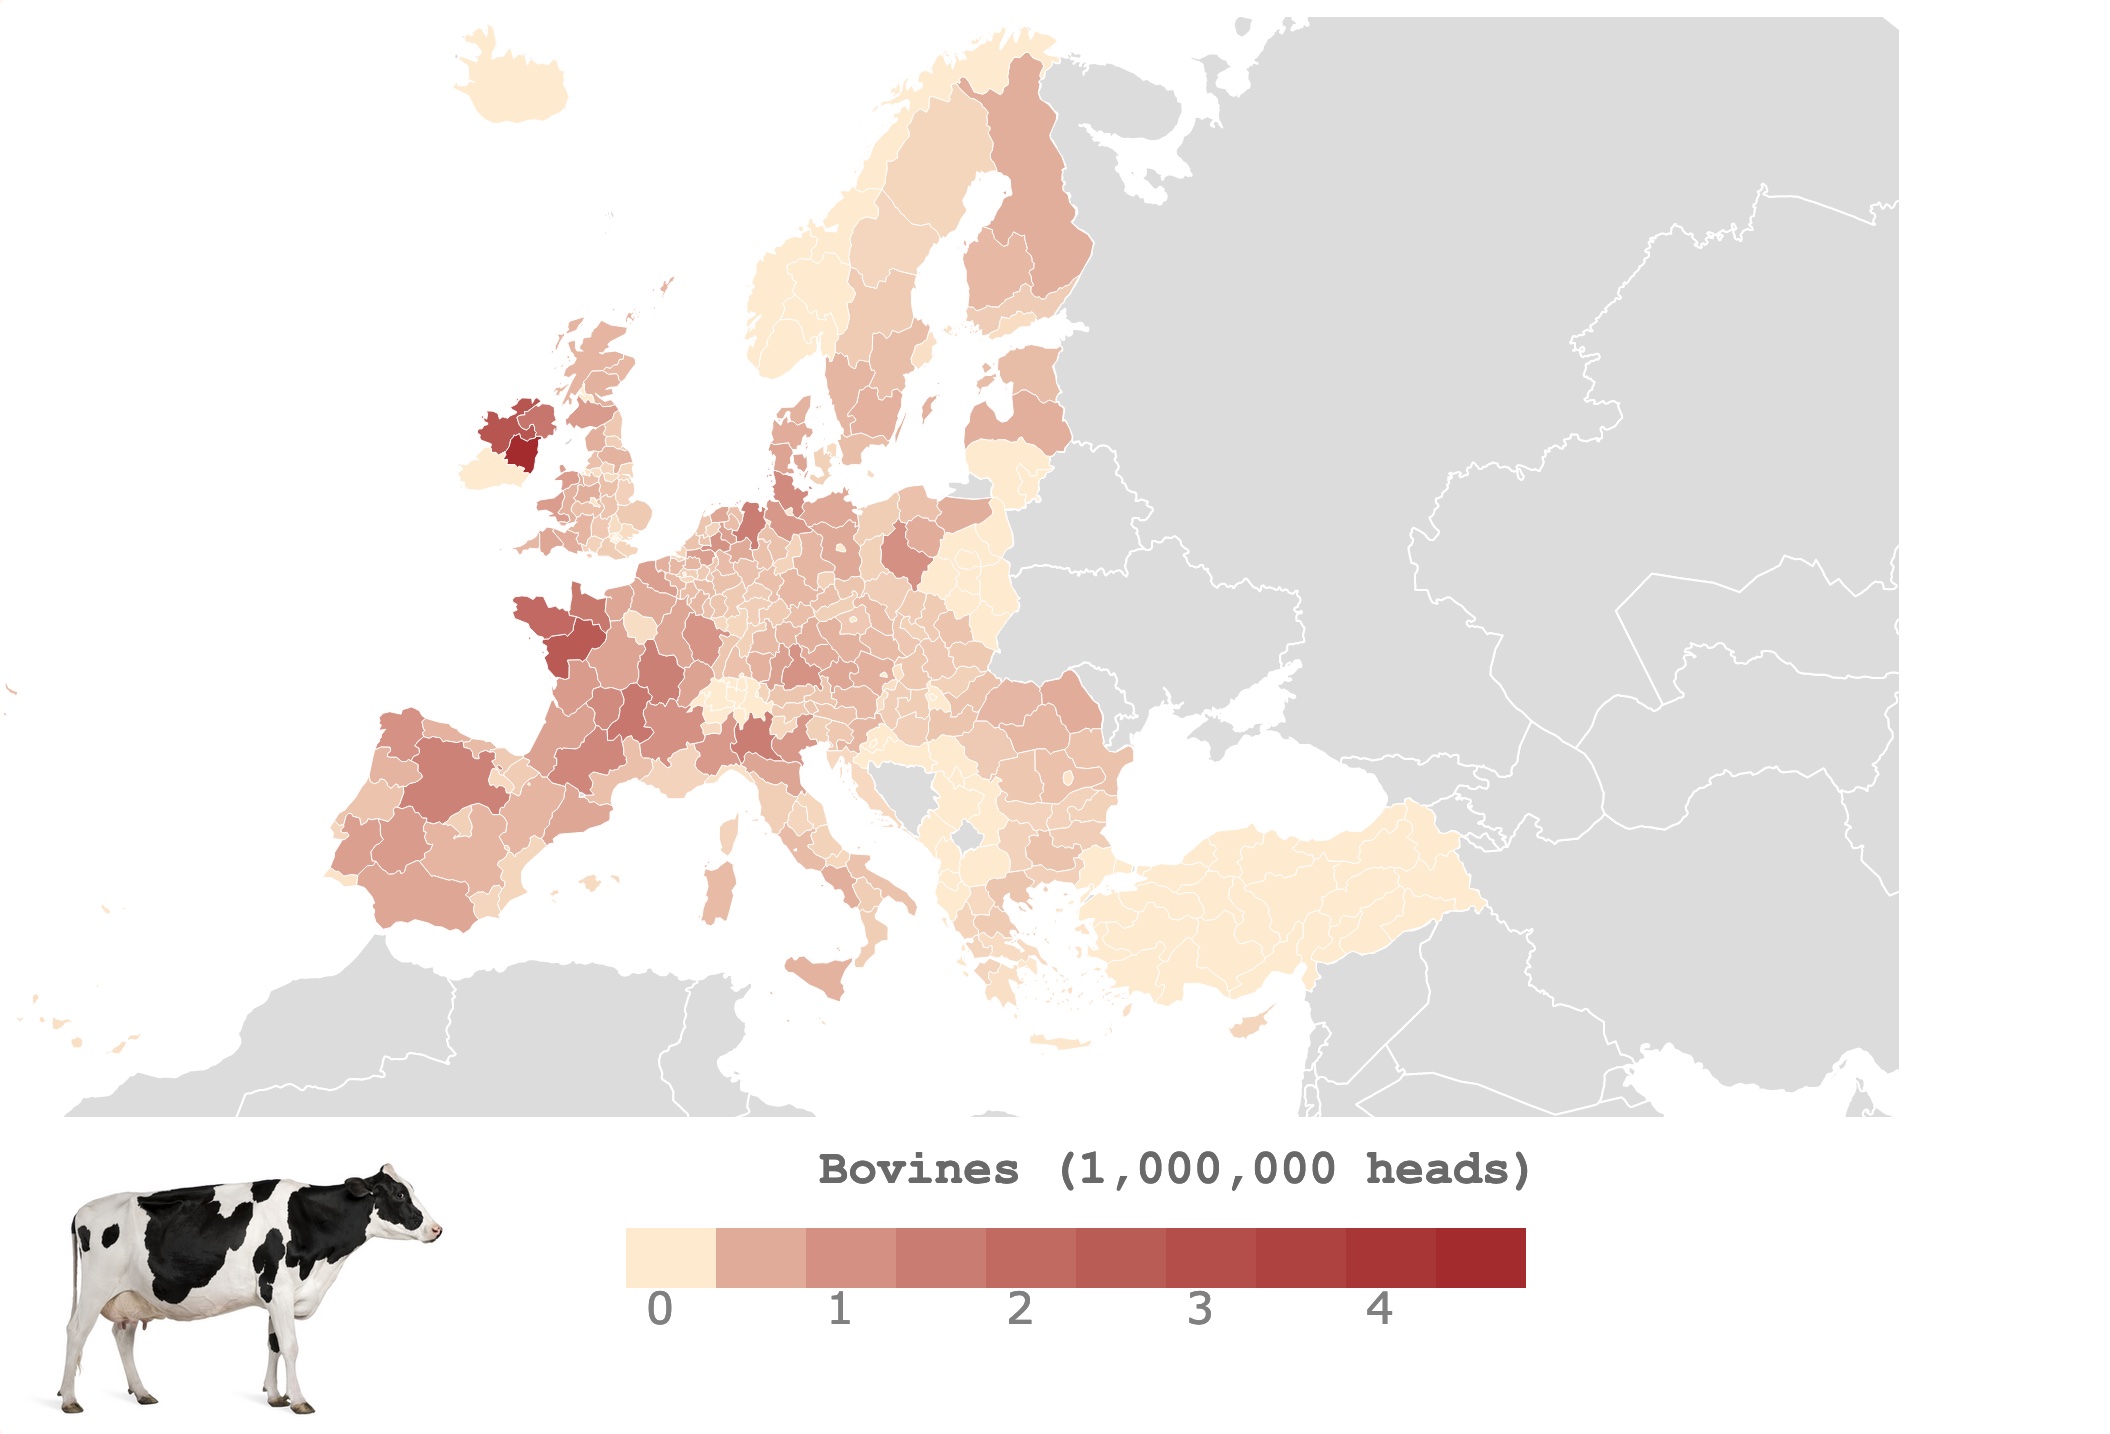 Map of cattle head deansity in Europen regions